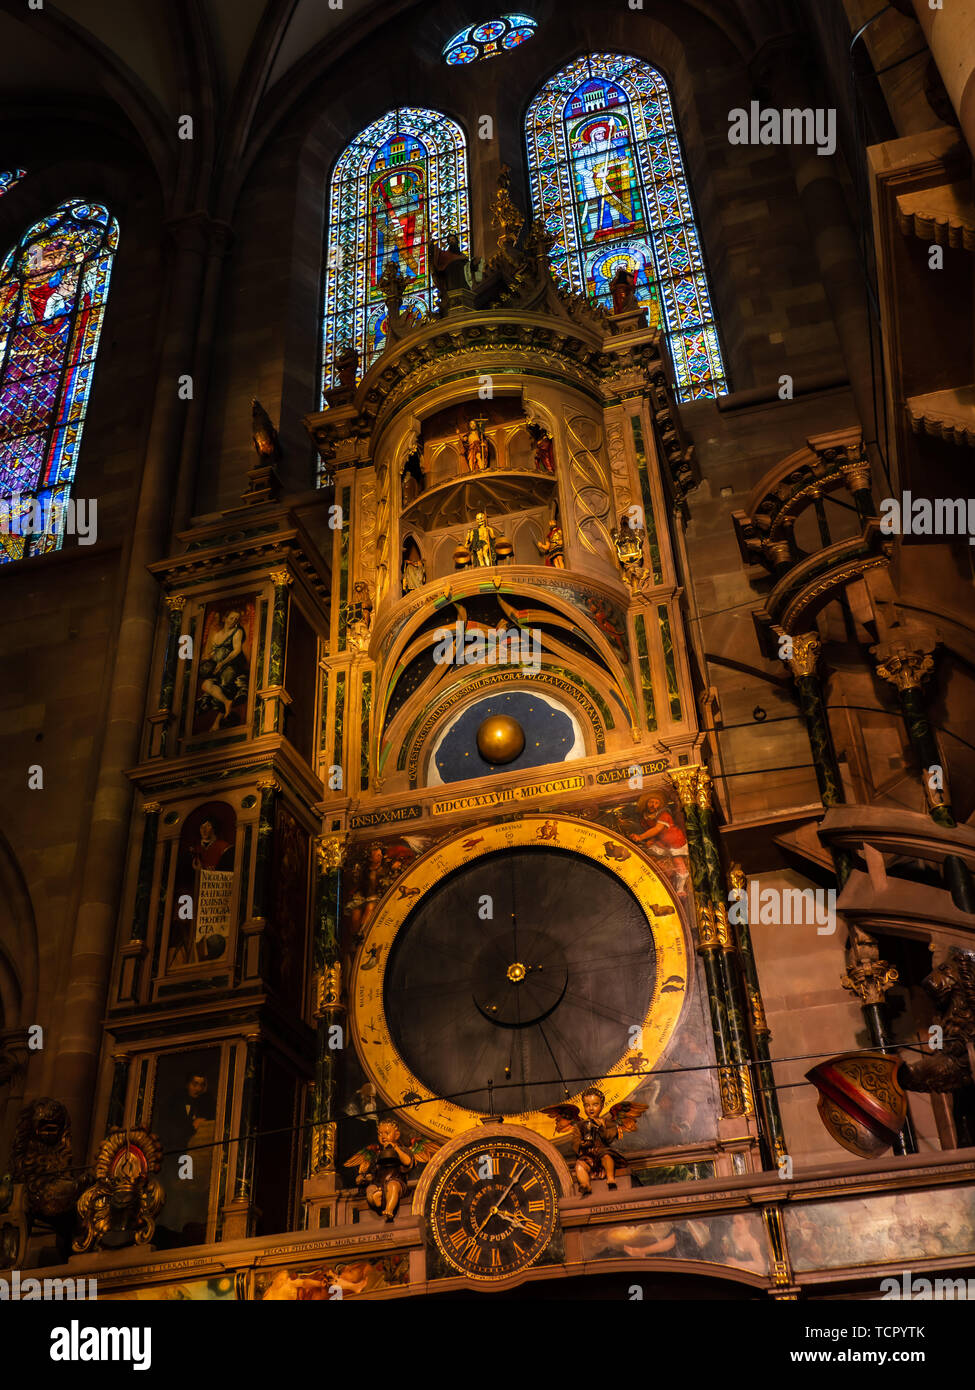 Astronomische Uhr in der Kathedrale von Straßburg Frankreich  Stockfotografie - Alamy